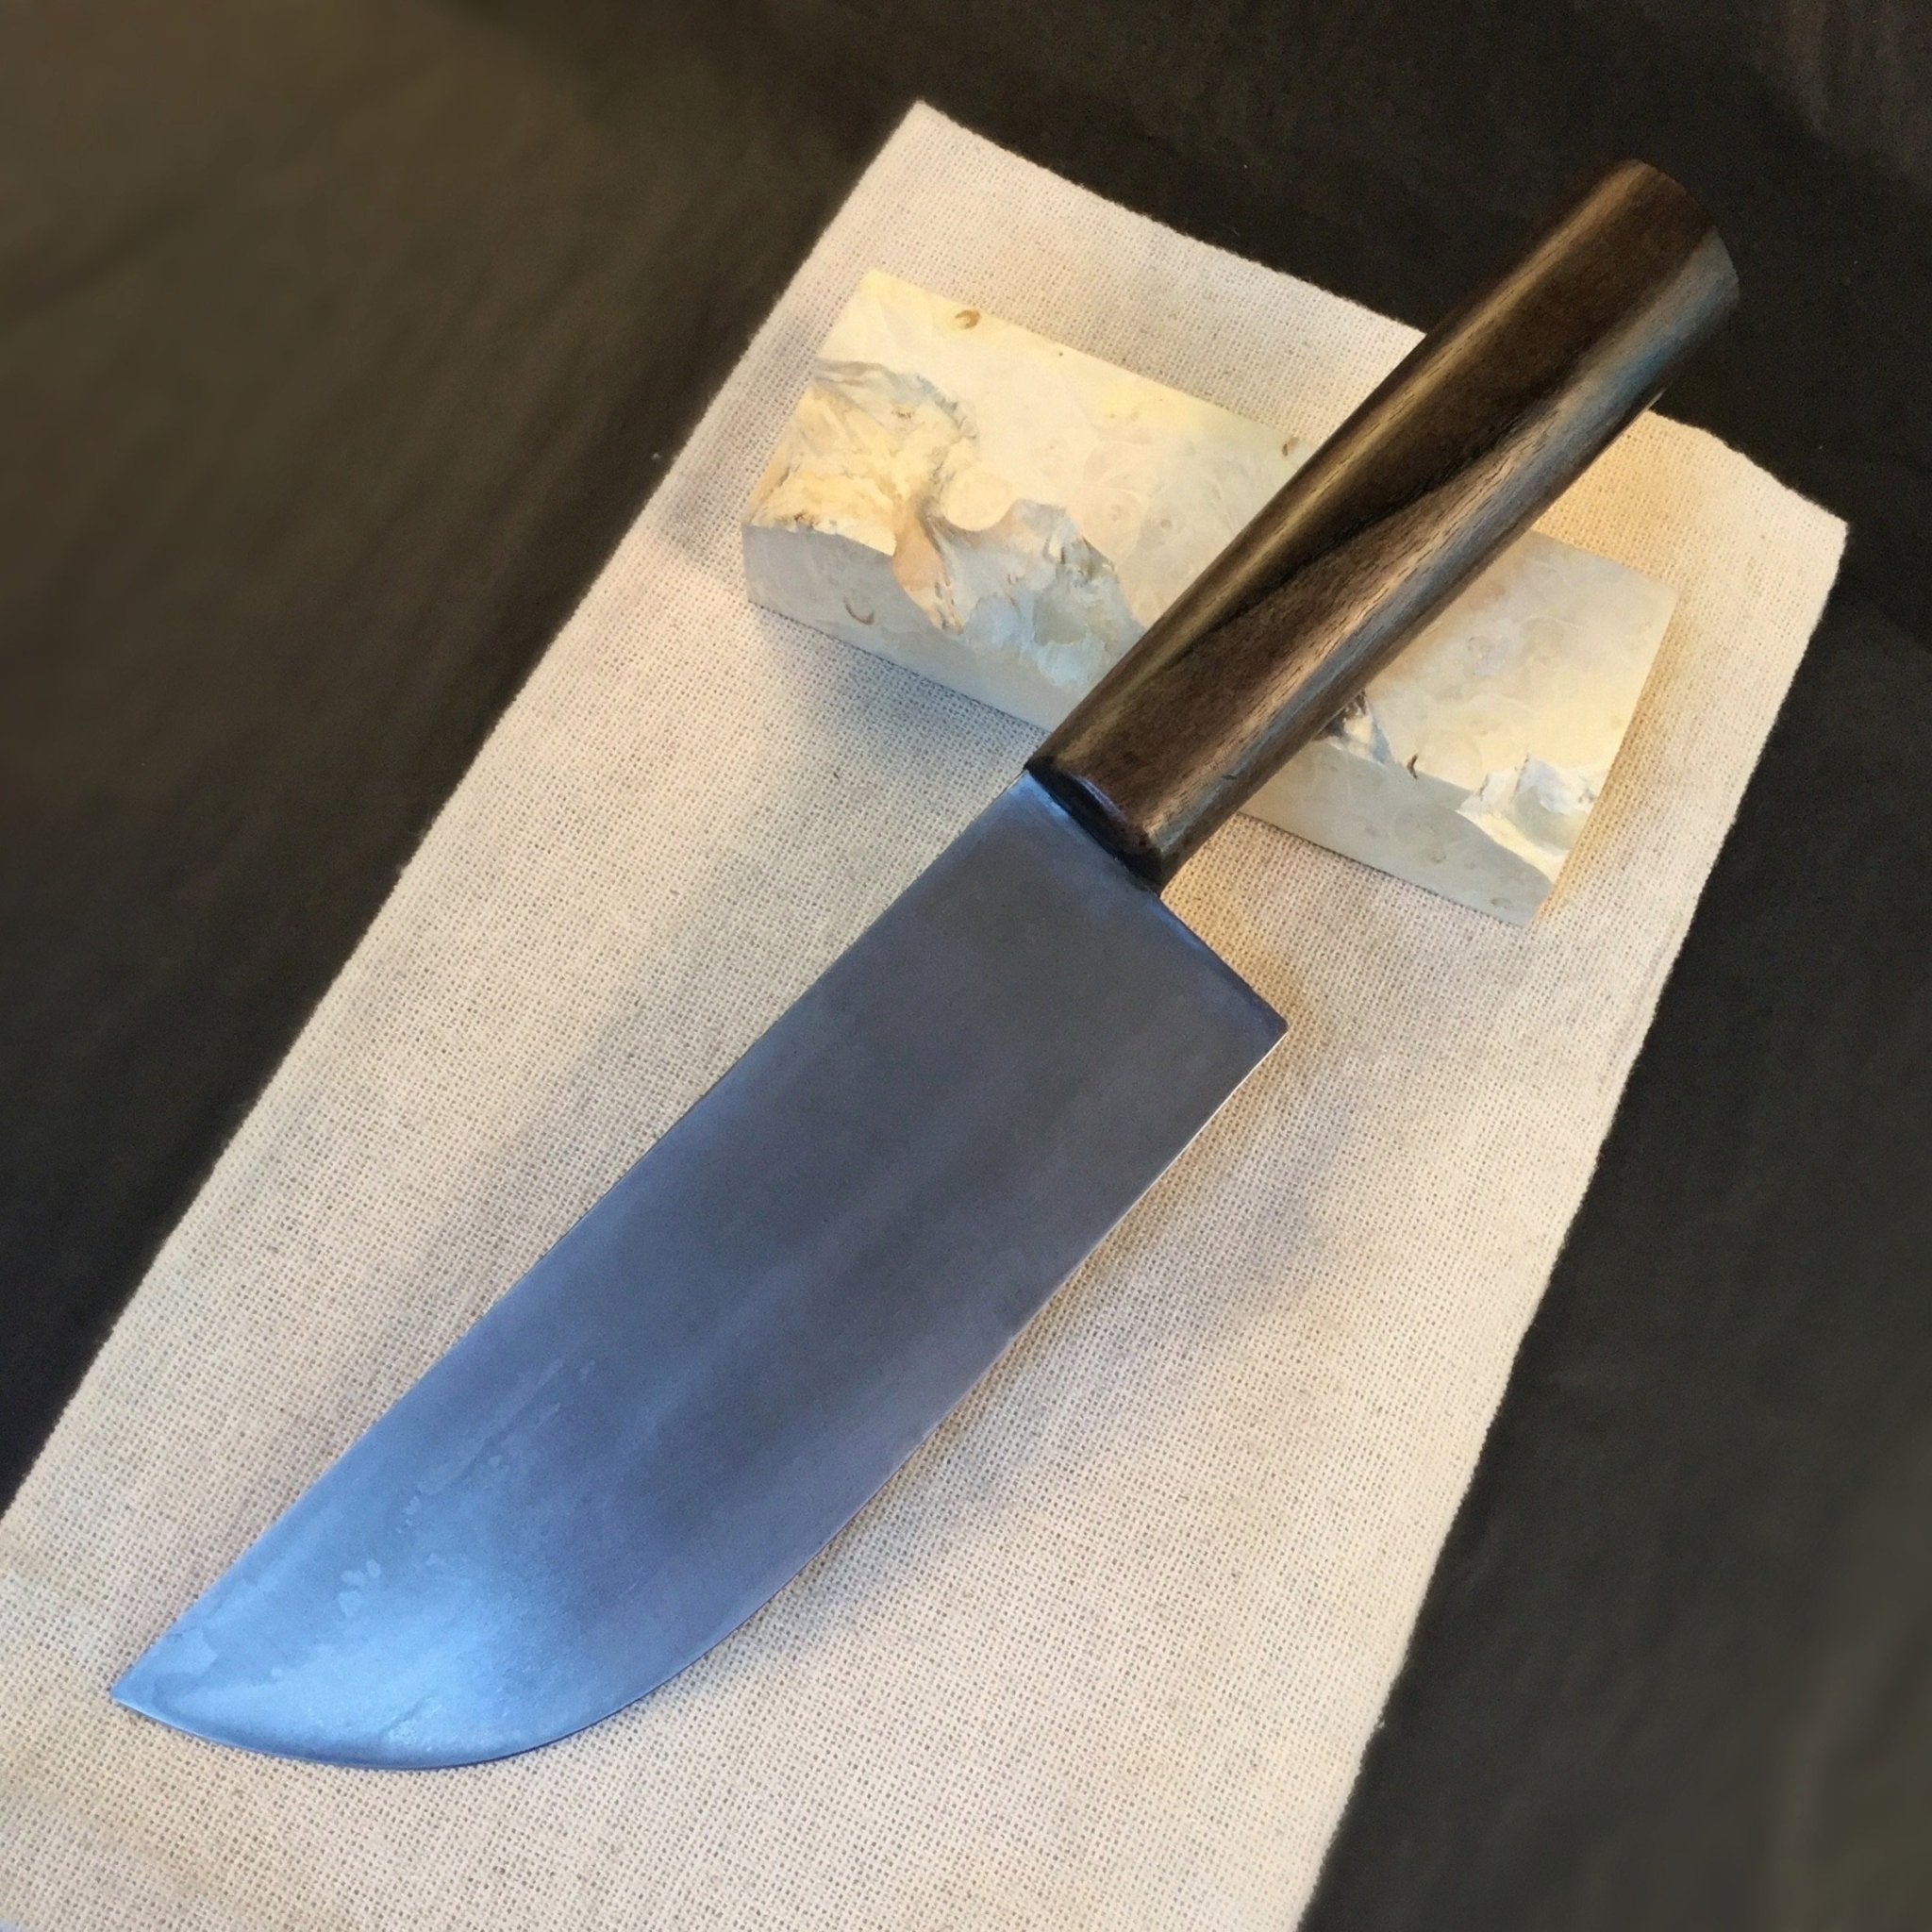 iron chef knives logo